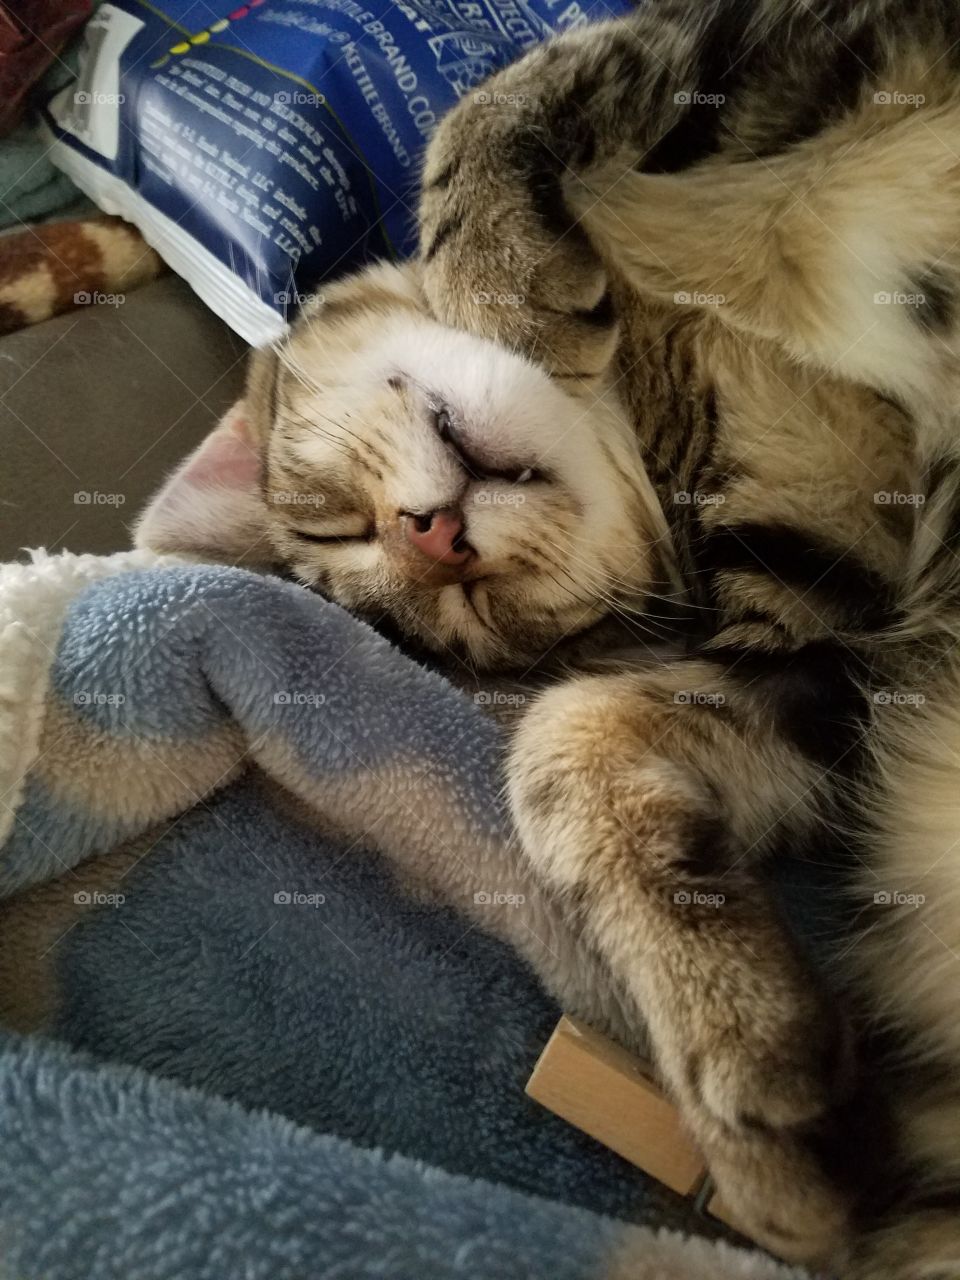 kitten sleeping upside down